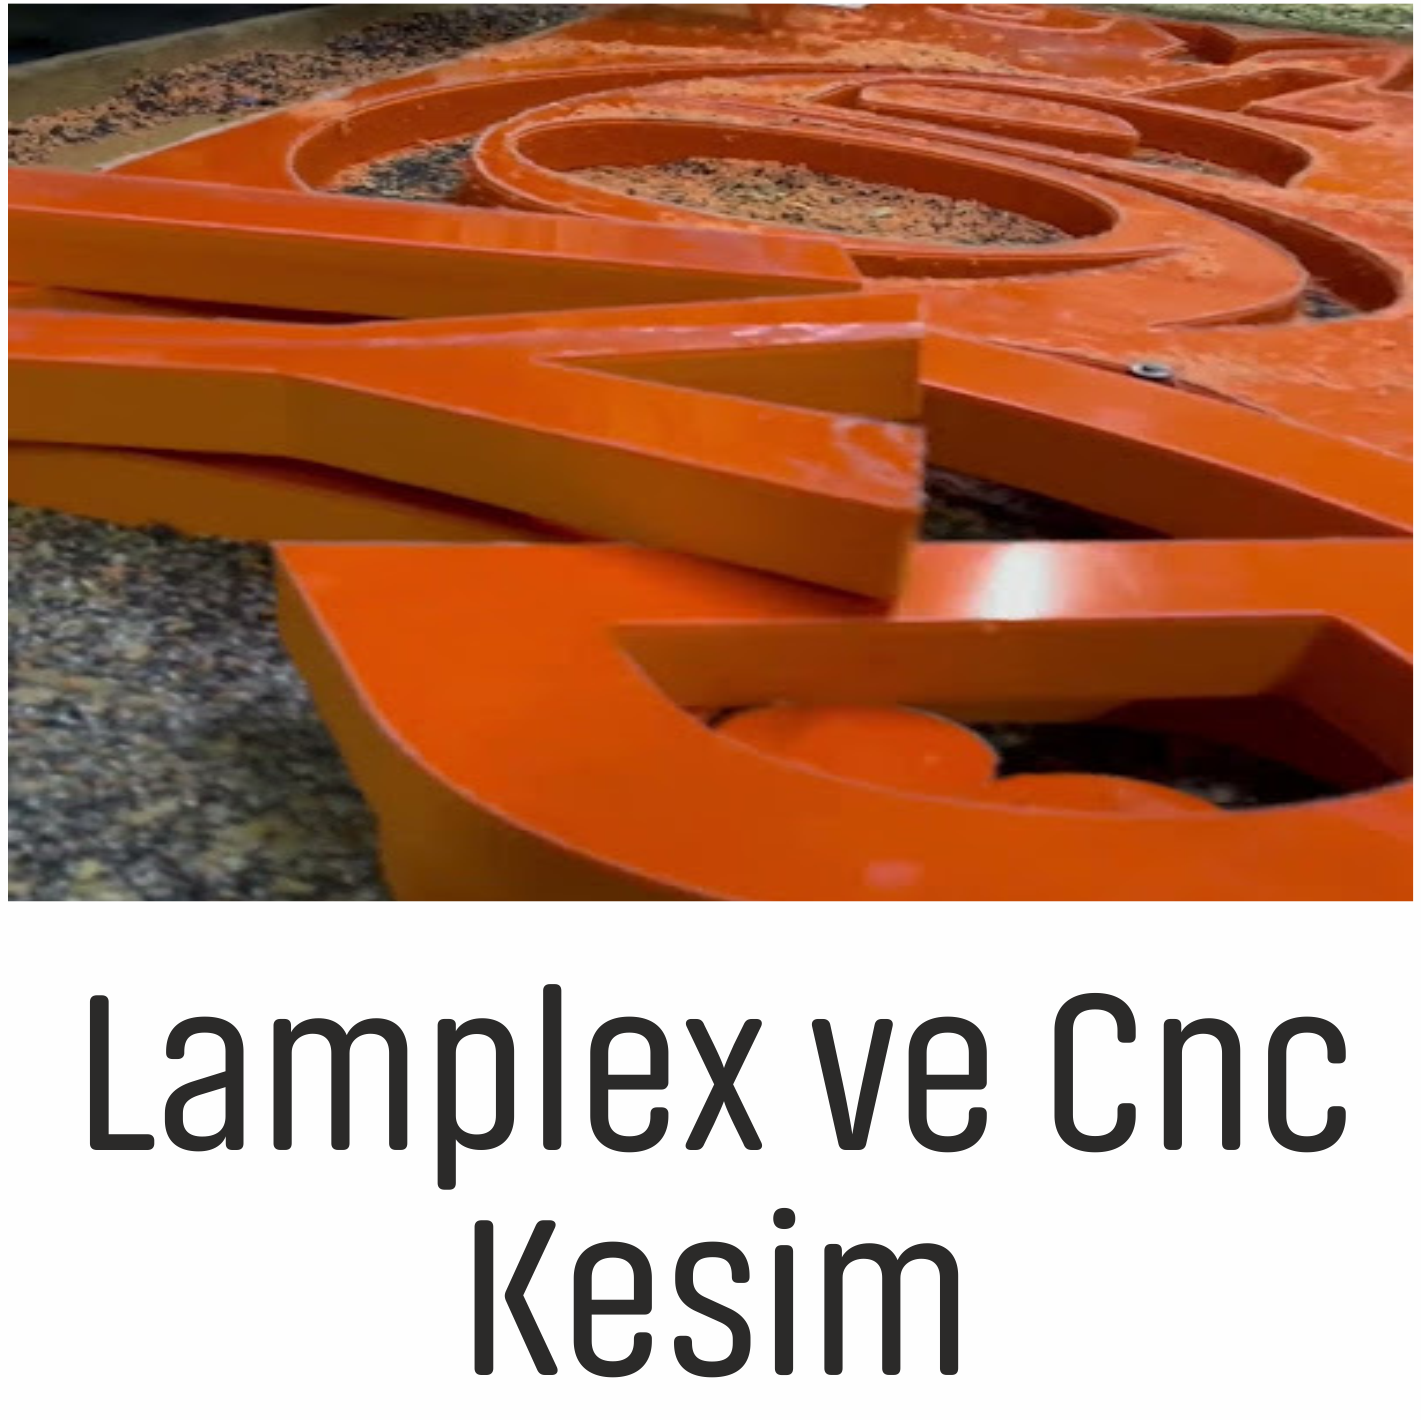 LAMPLEX VE CNC KESİM